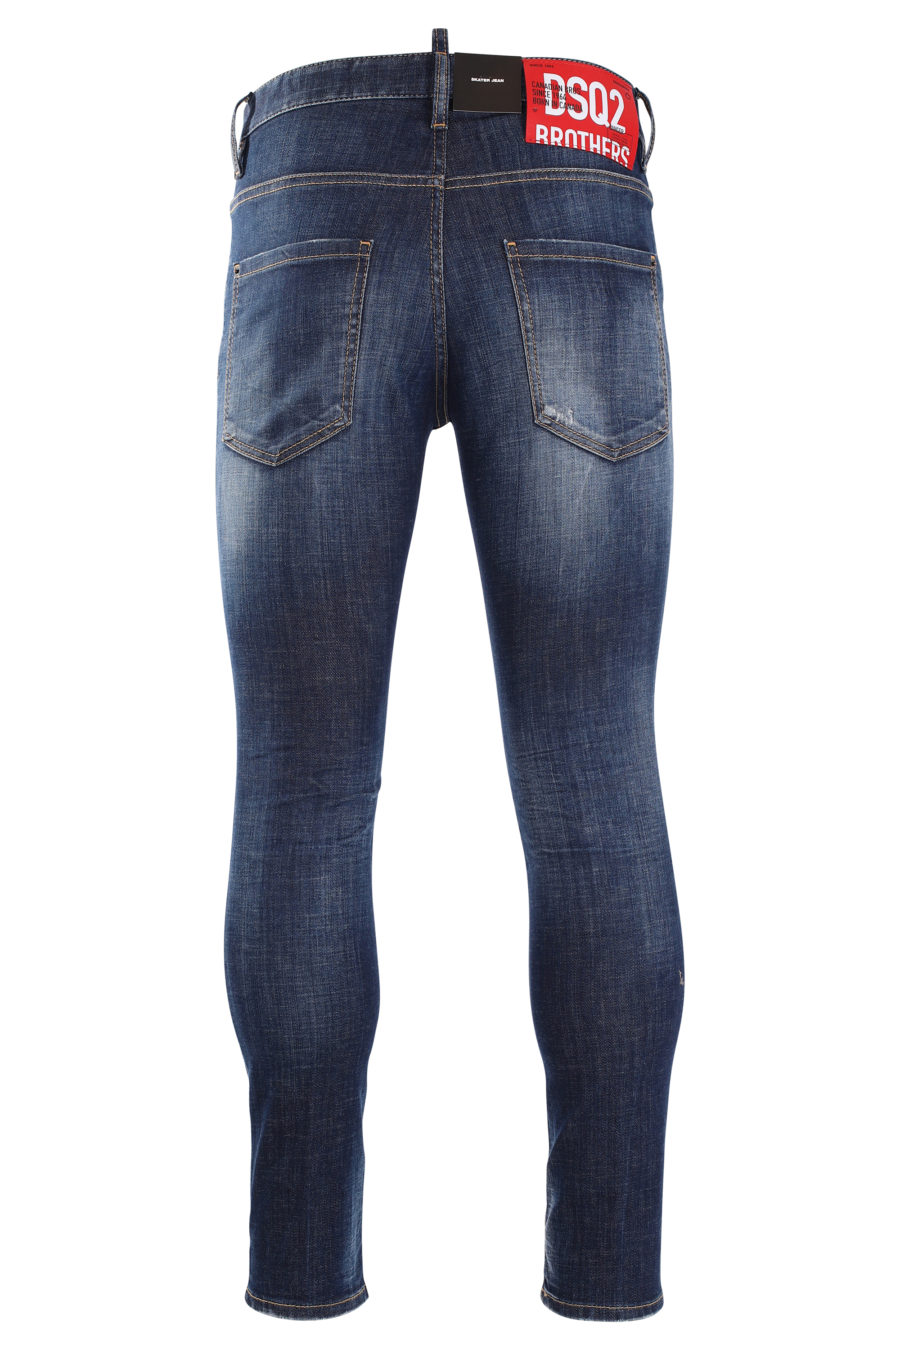 Pantalón vaquero "skater" azul con efecto desgastado - IMG 0004